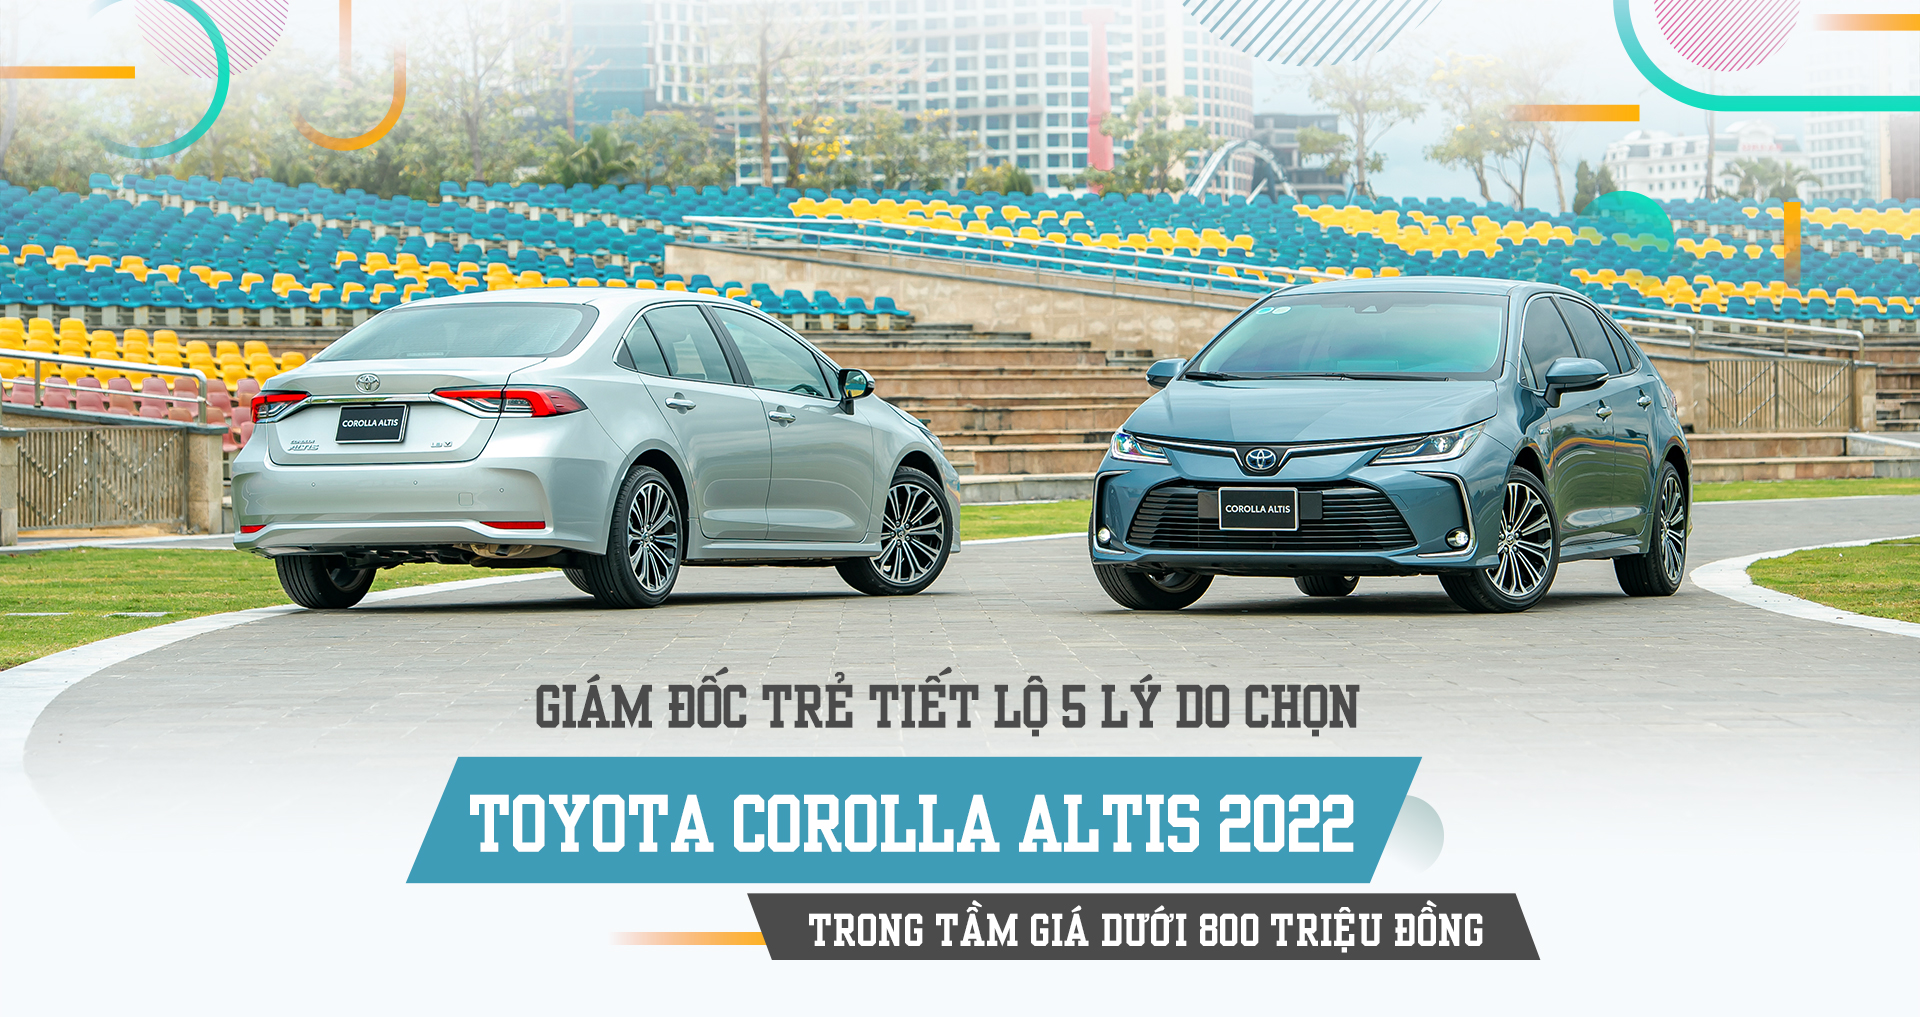 Giám đốc trẻ tiết lộ 5 lý do chọn Toyota Corolla Altis 2022 trong tầm giá dưới 800 triệu đồng - 1